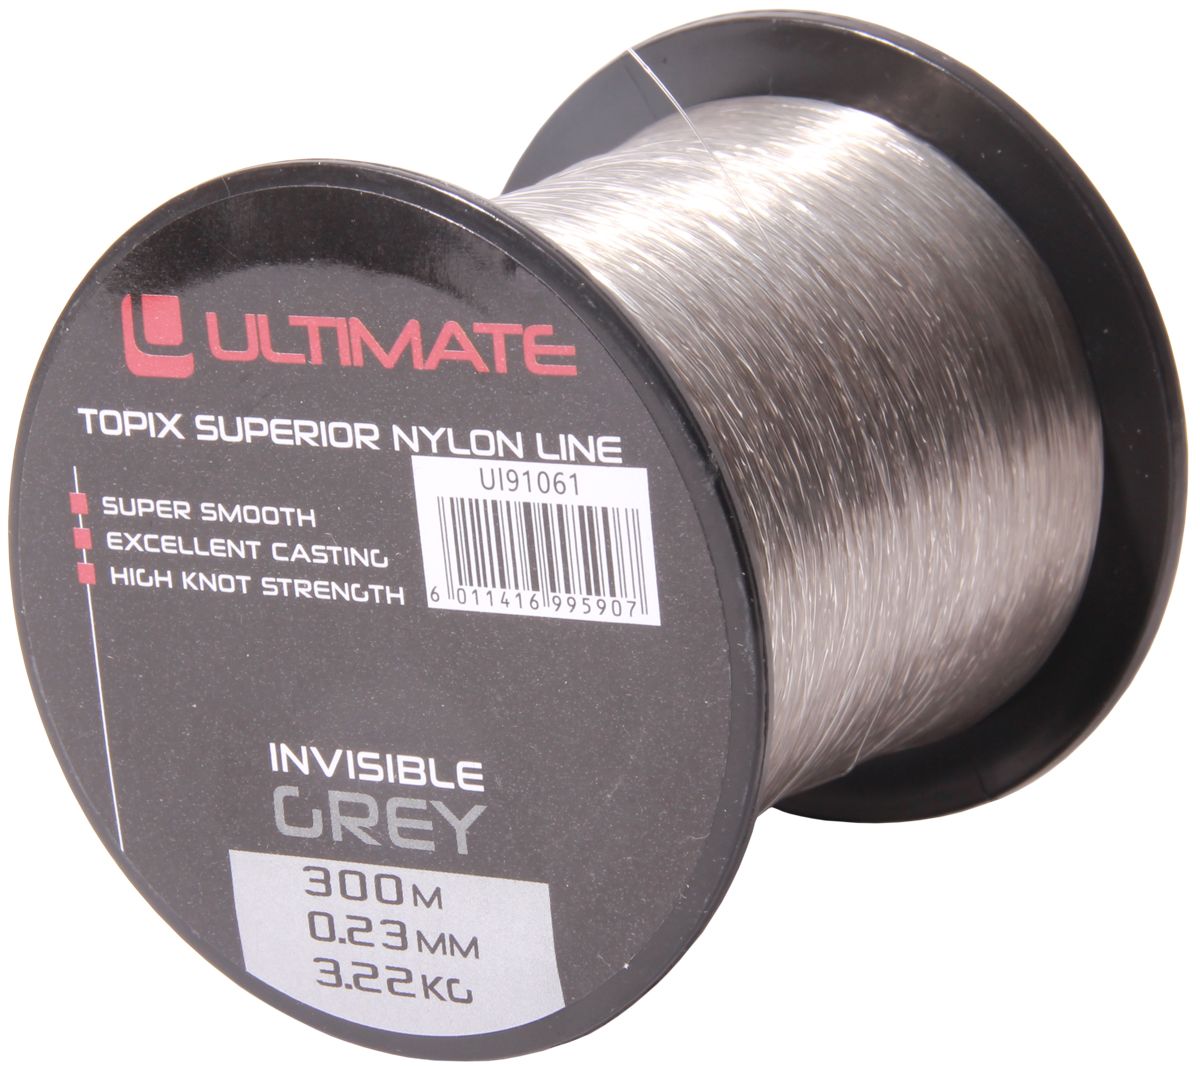 Ultimate Topix nylon invisible grey 300m 0,23mm 3,22kg